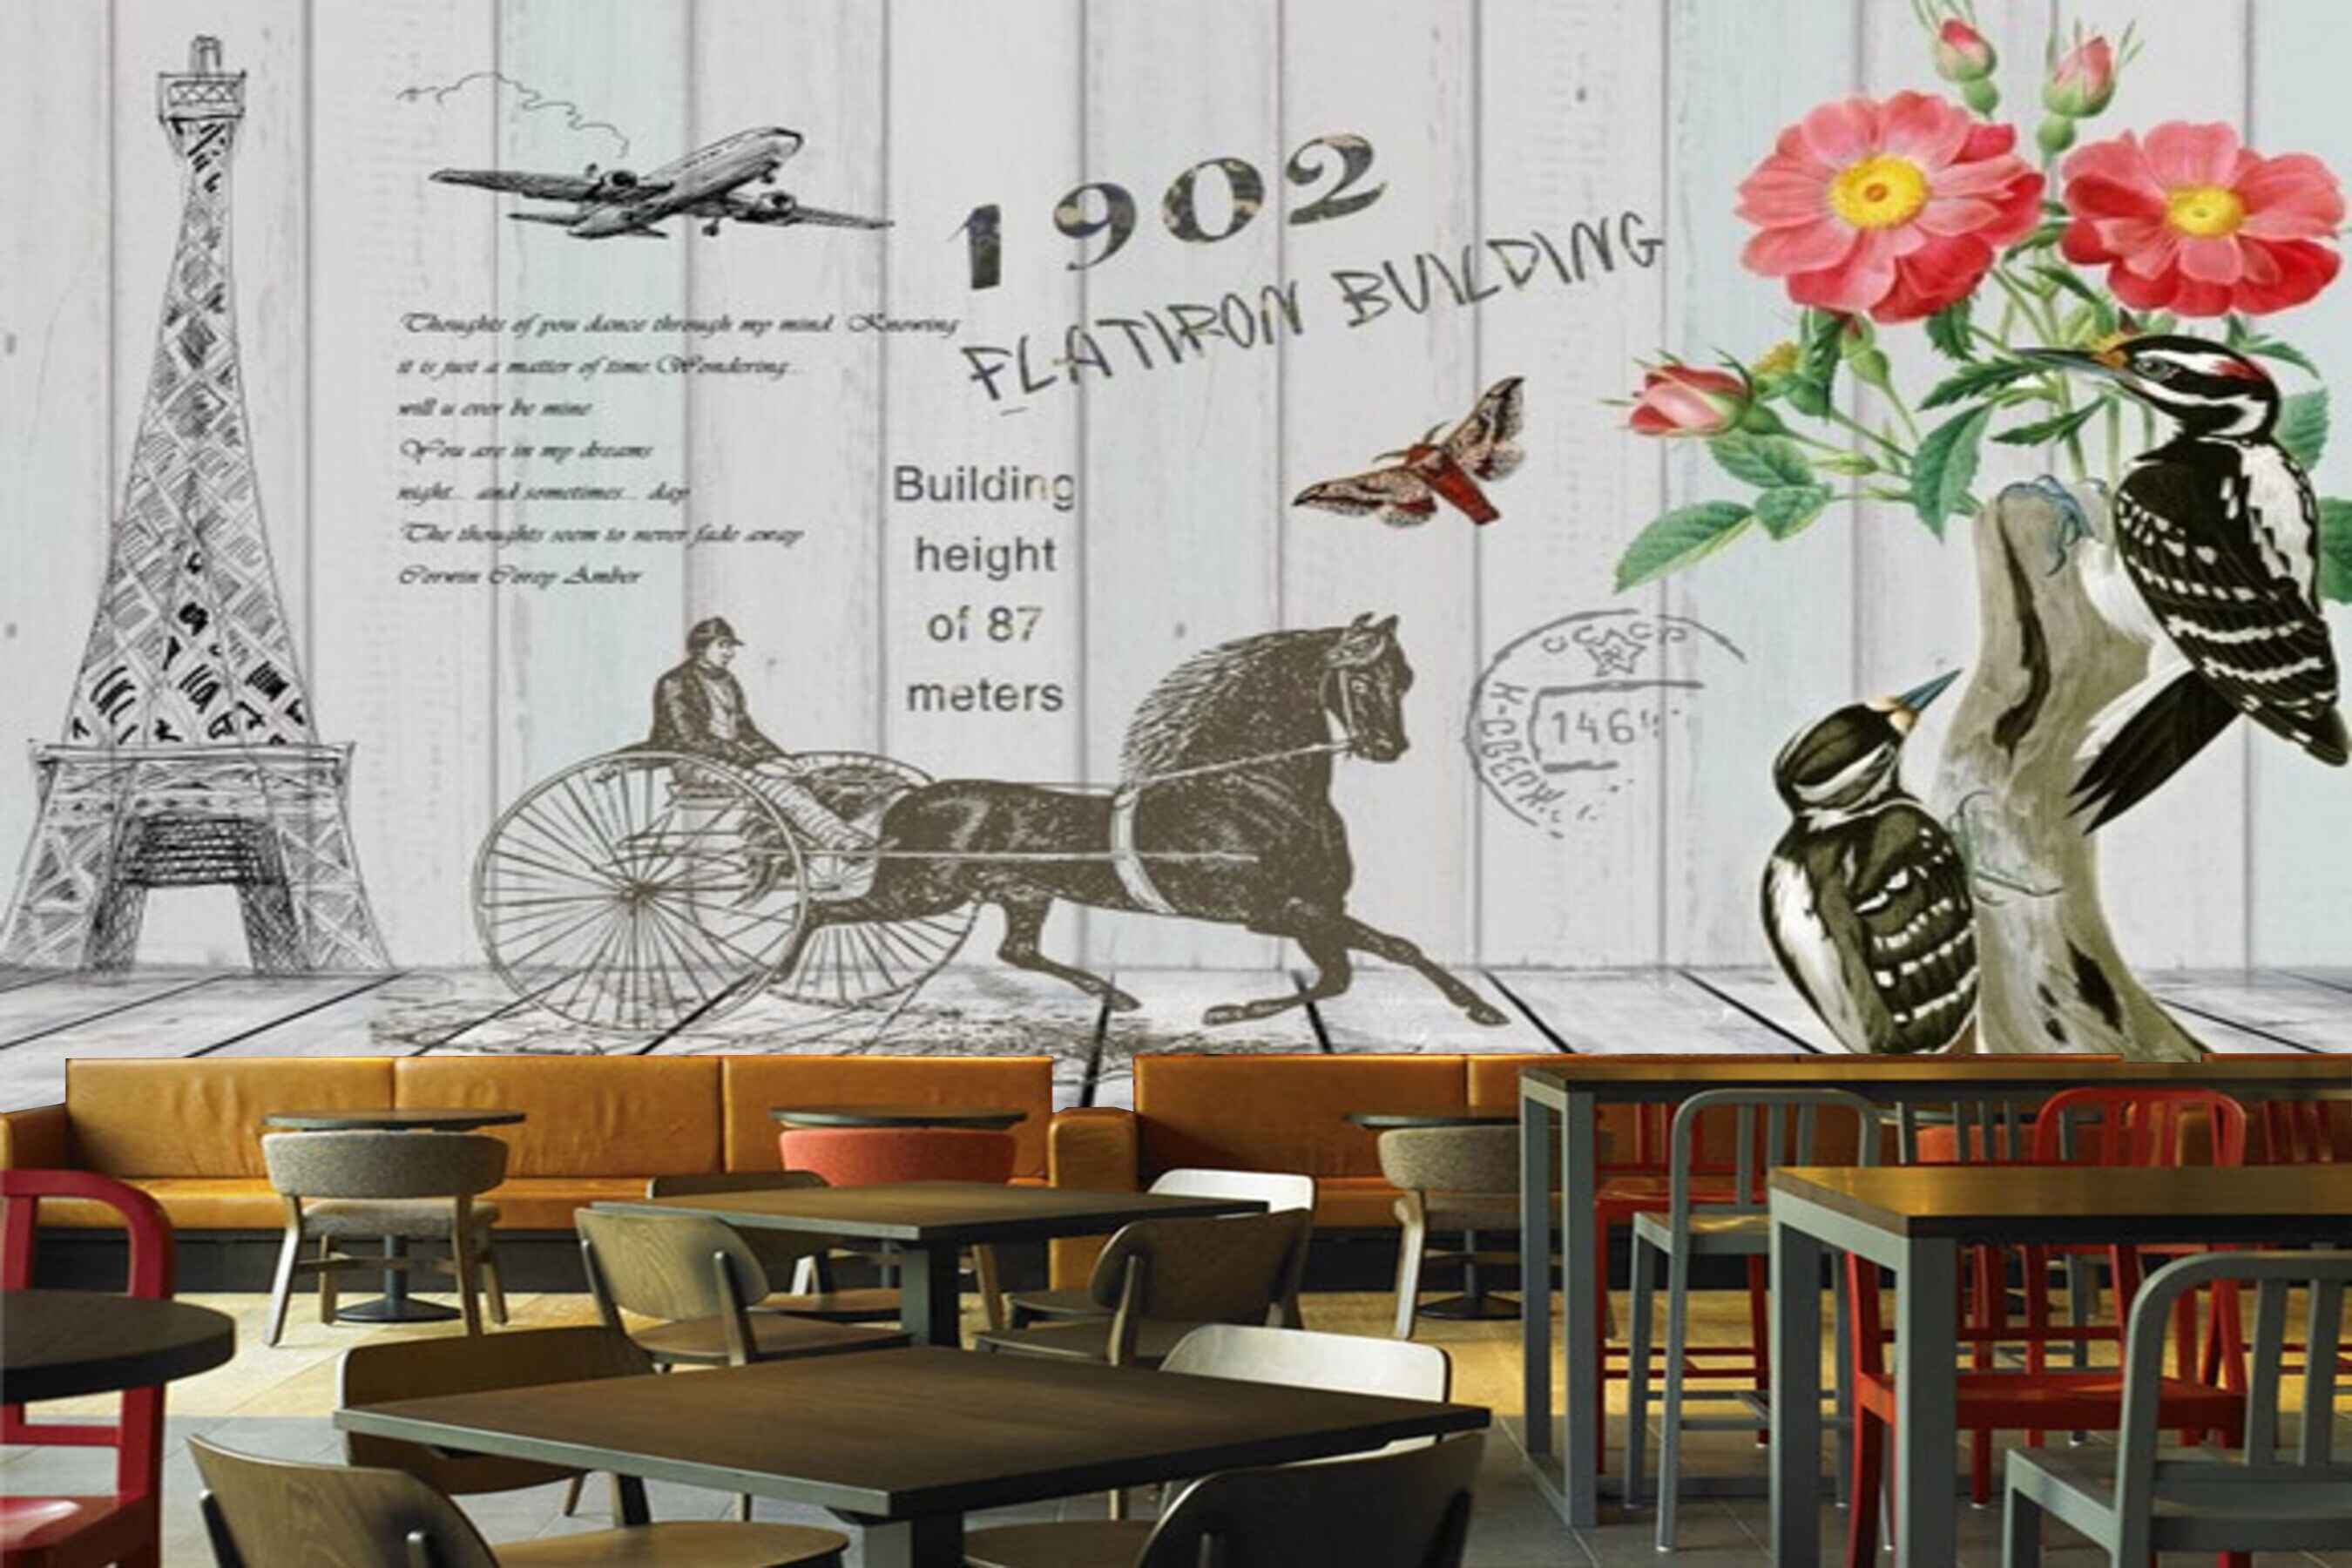 Avikalp MWZ3076 Eiffel Tower Horse Cart Flowers Birds Aeroplane HD Wallpaper for Cafe Restaurant